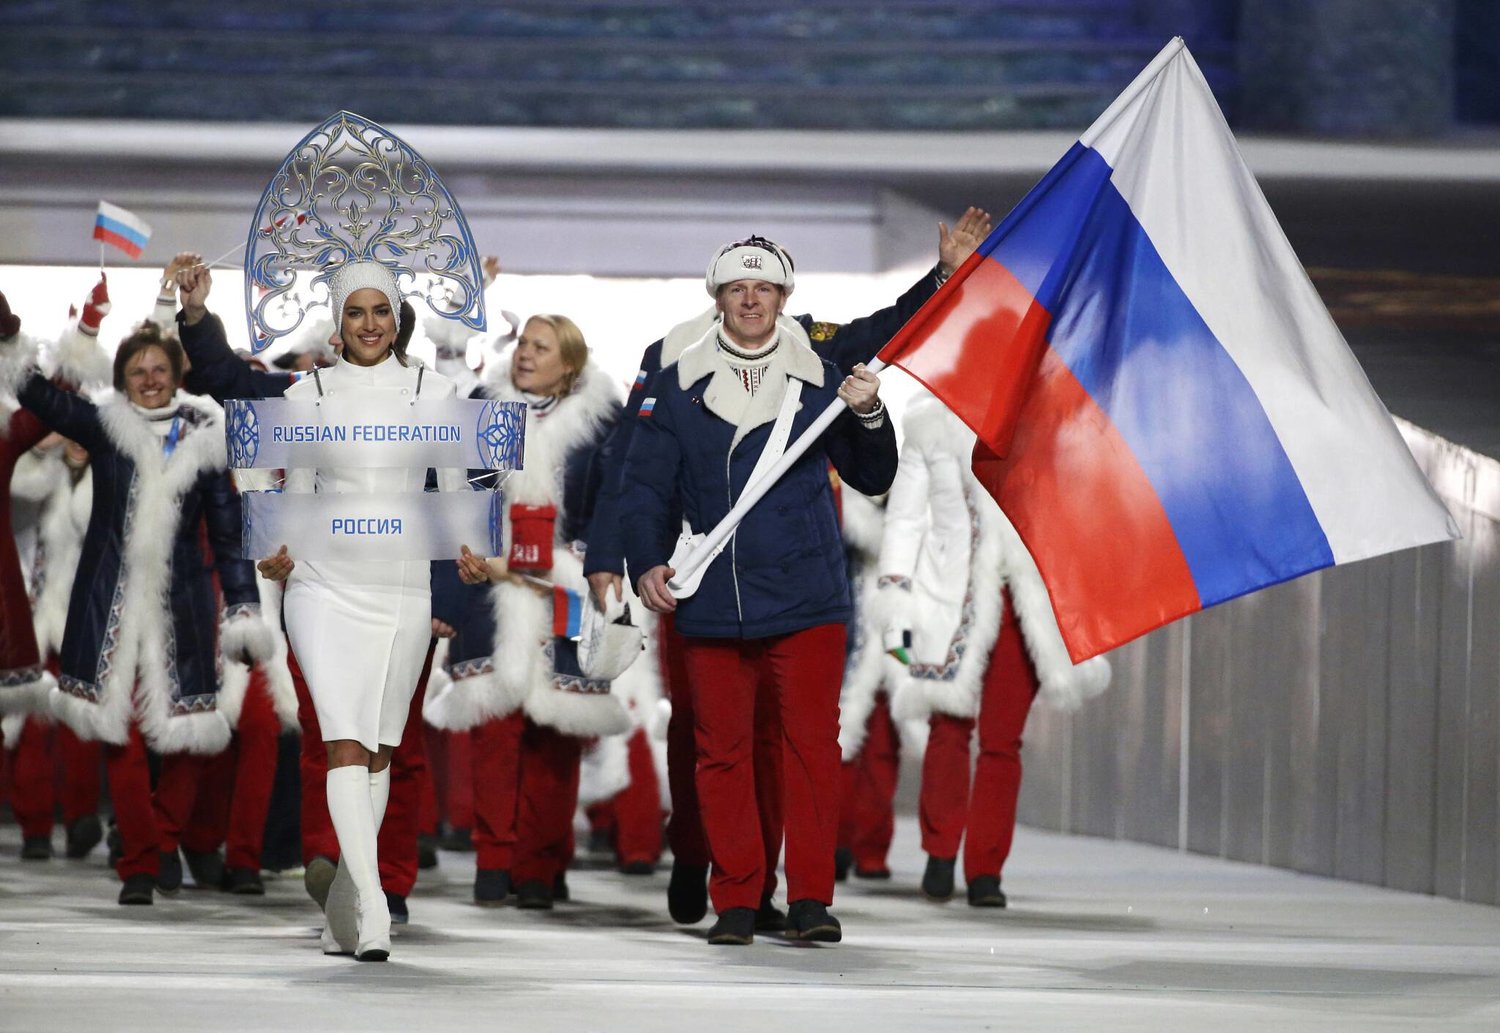 مطالبات بقبول مشاركة روسيا في أولمبياد باريس 2024 (أ.ب)